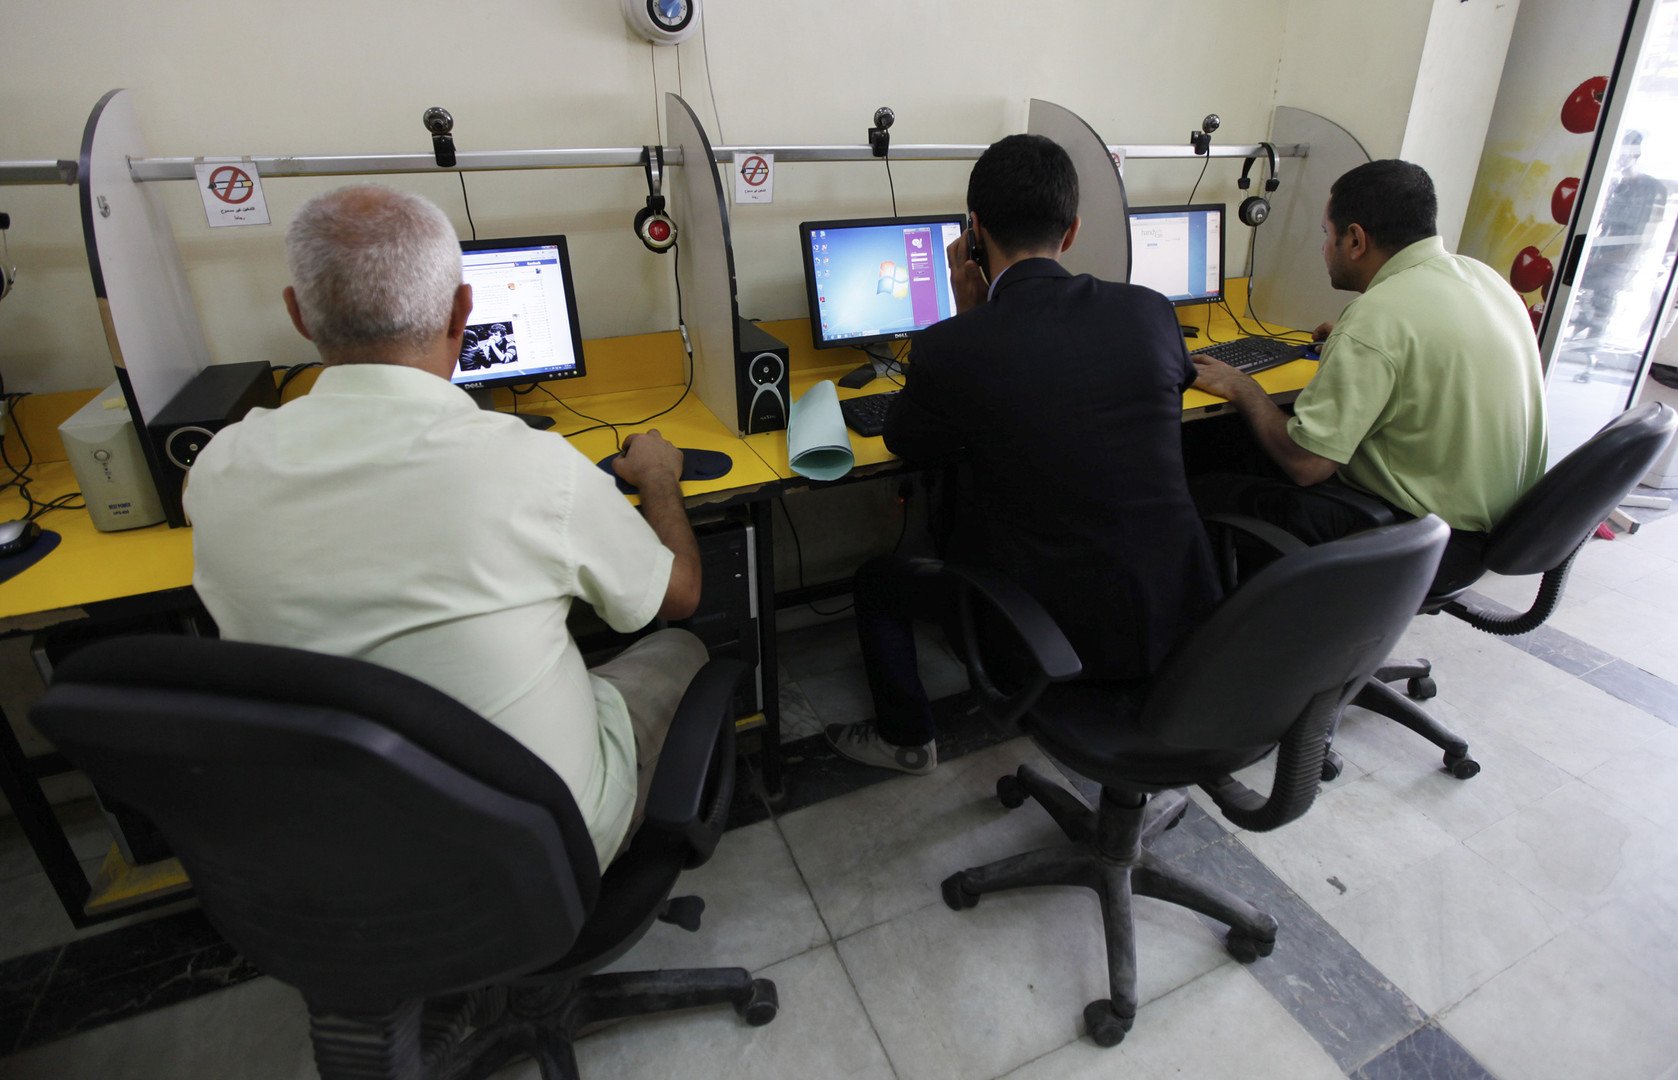 خبيرة لـRT: خدمة الإنترنت في العراق مهددة بالانتهاء خلال عامين